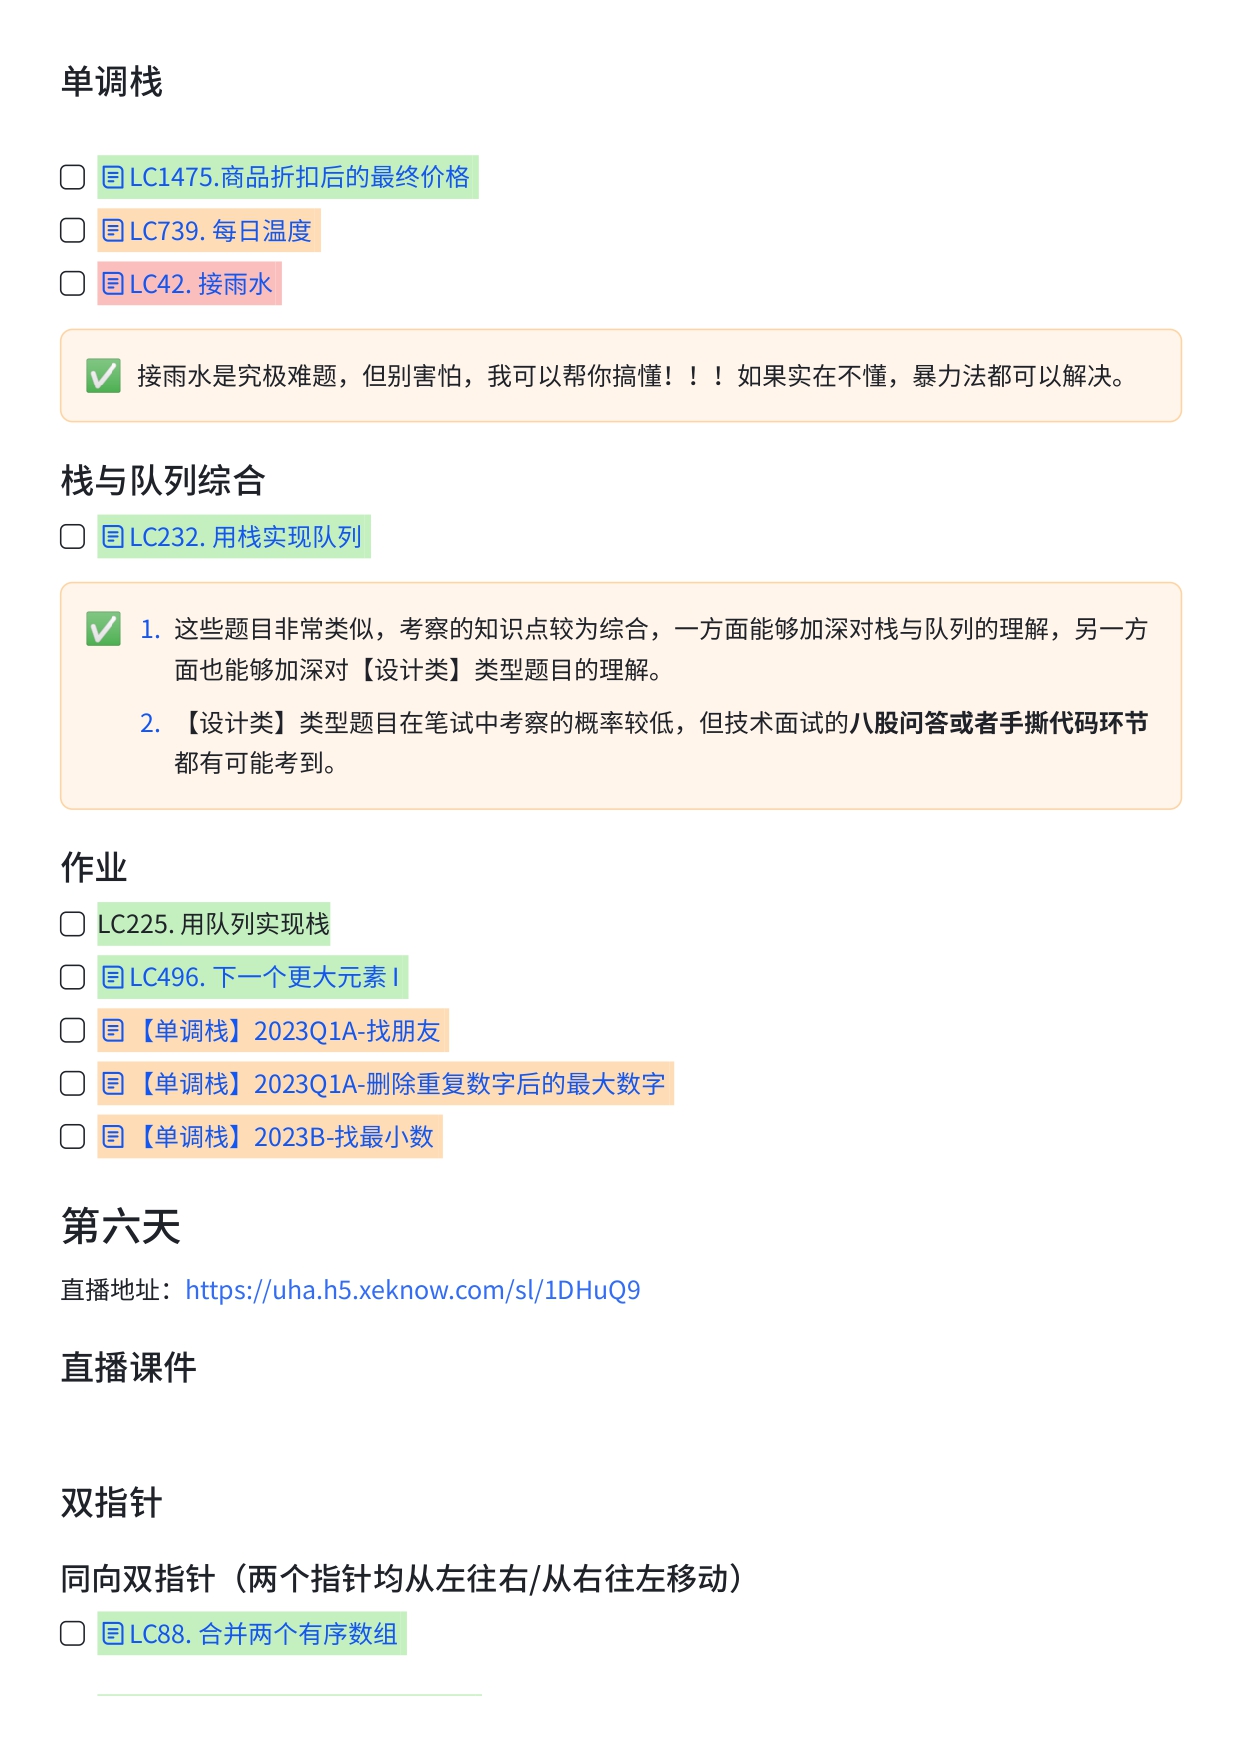 华为OD精品小班培训课程安排【一期】 (1)_page-0007